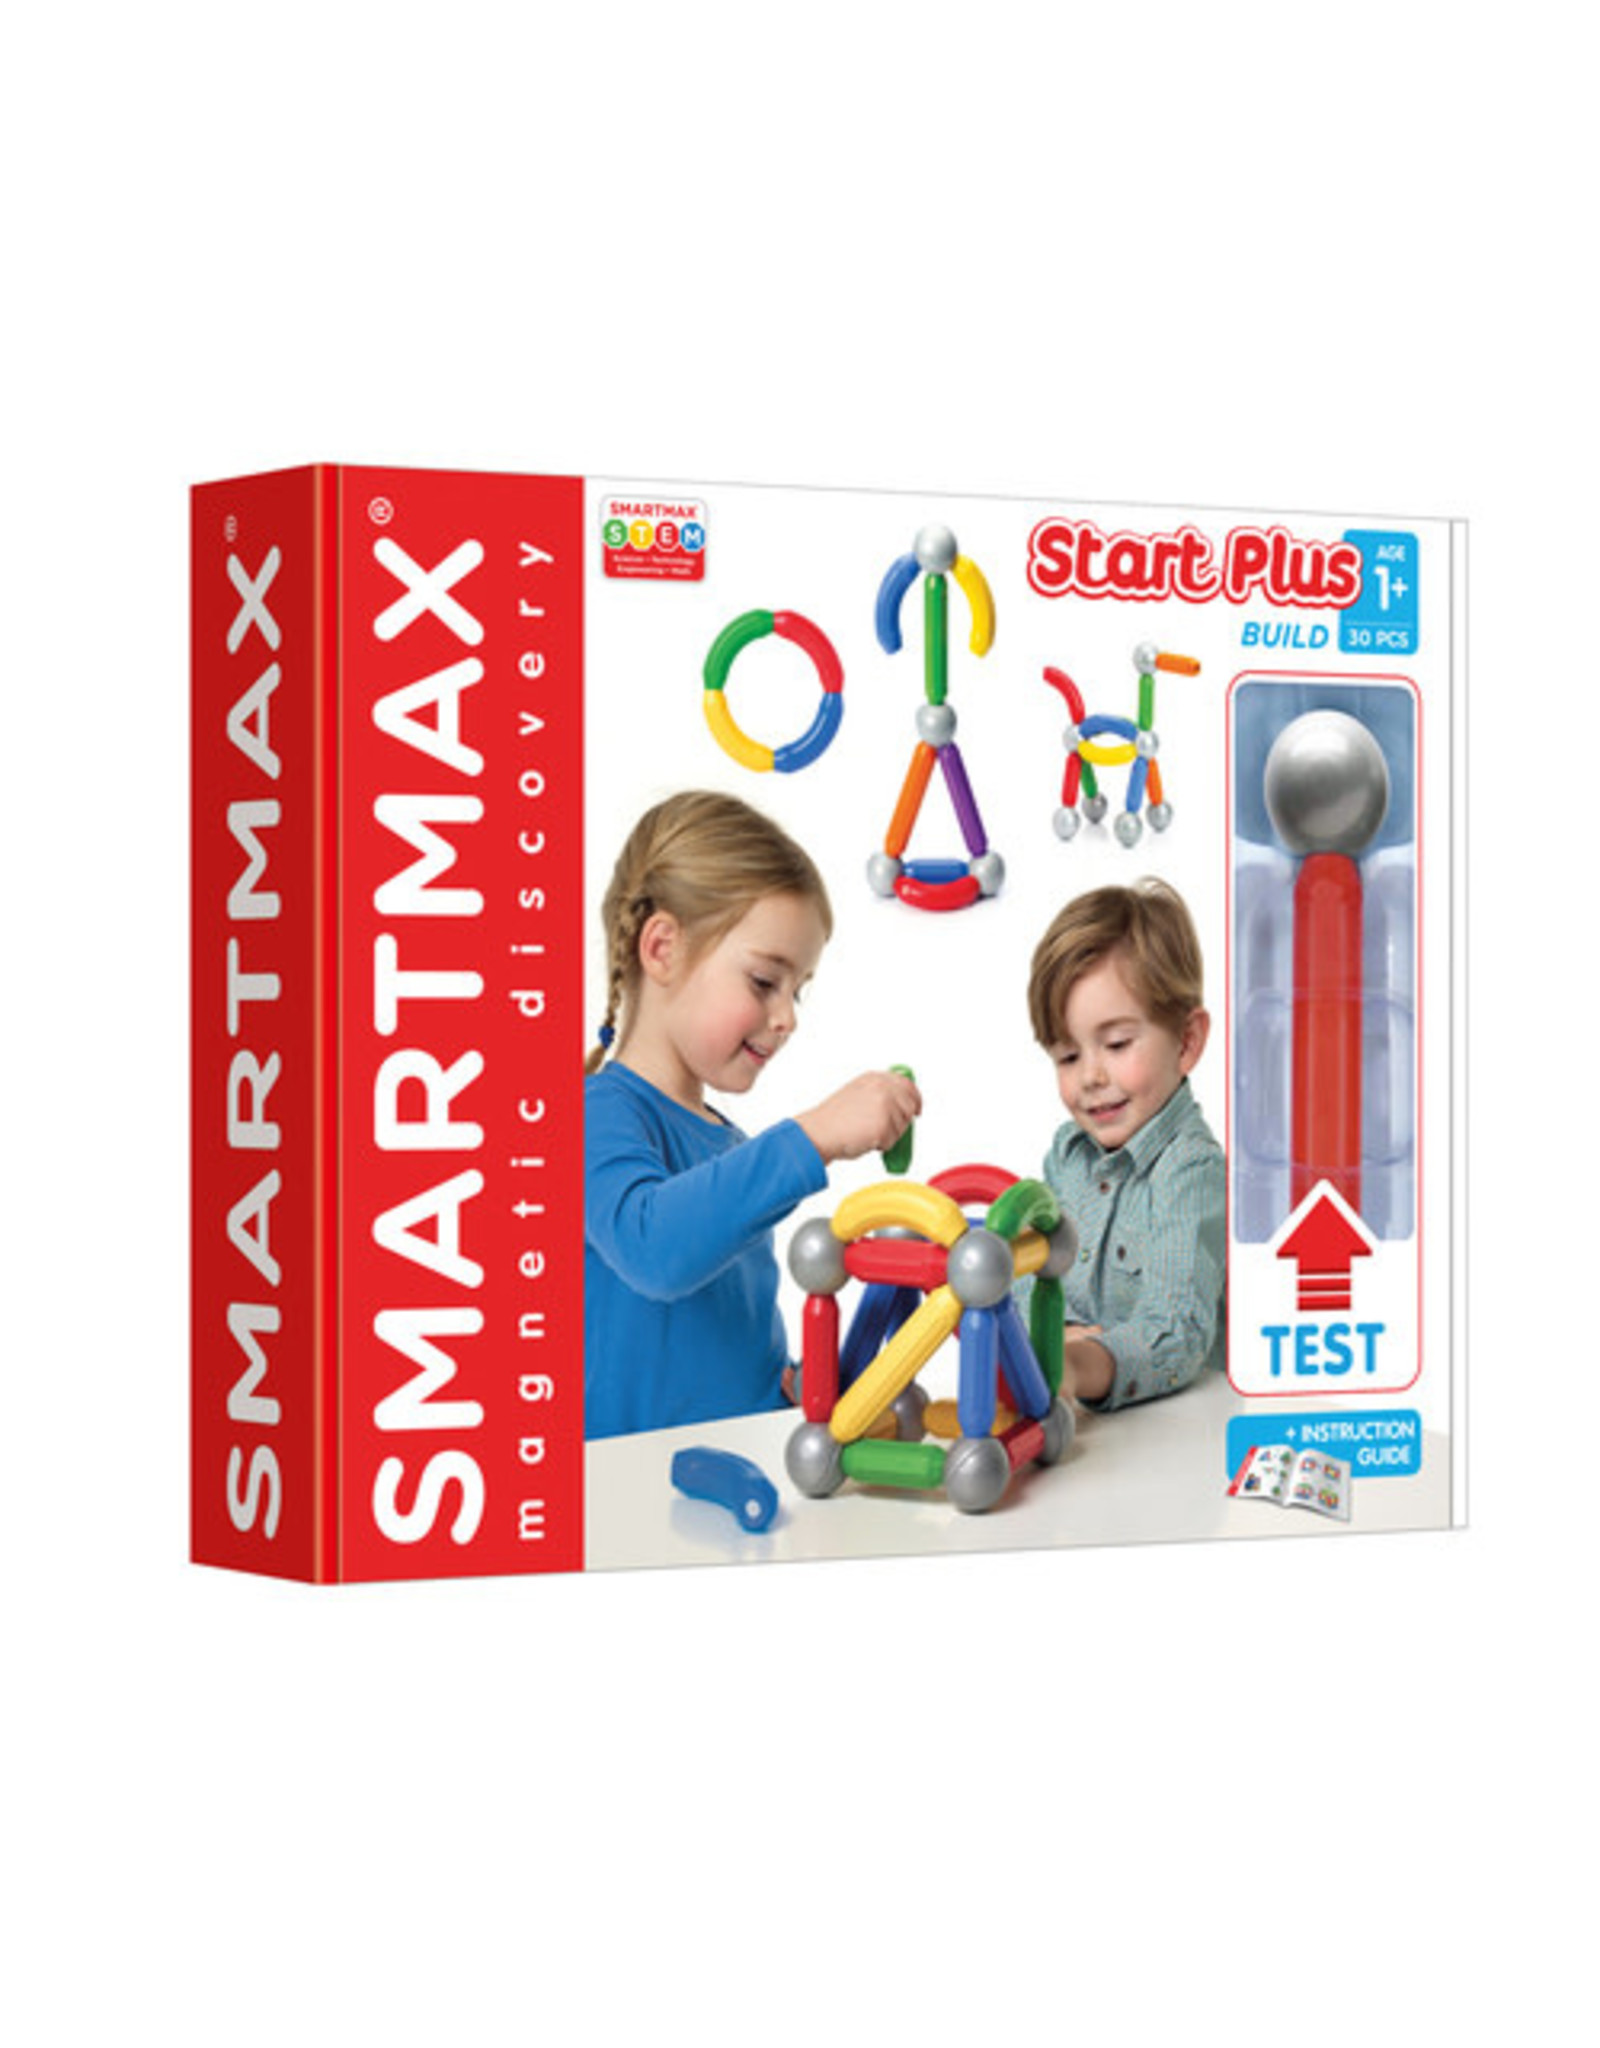 Smartmax SmartMax SMX 310 Start Plus